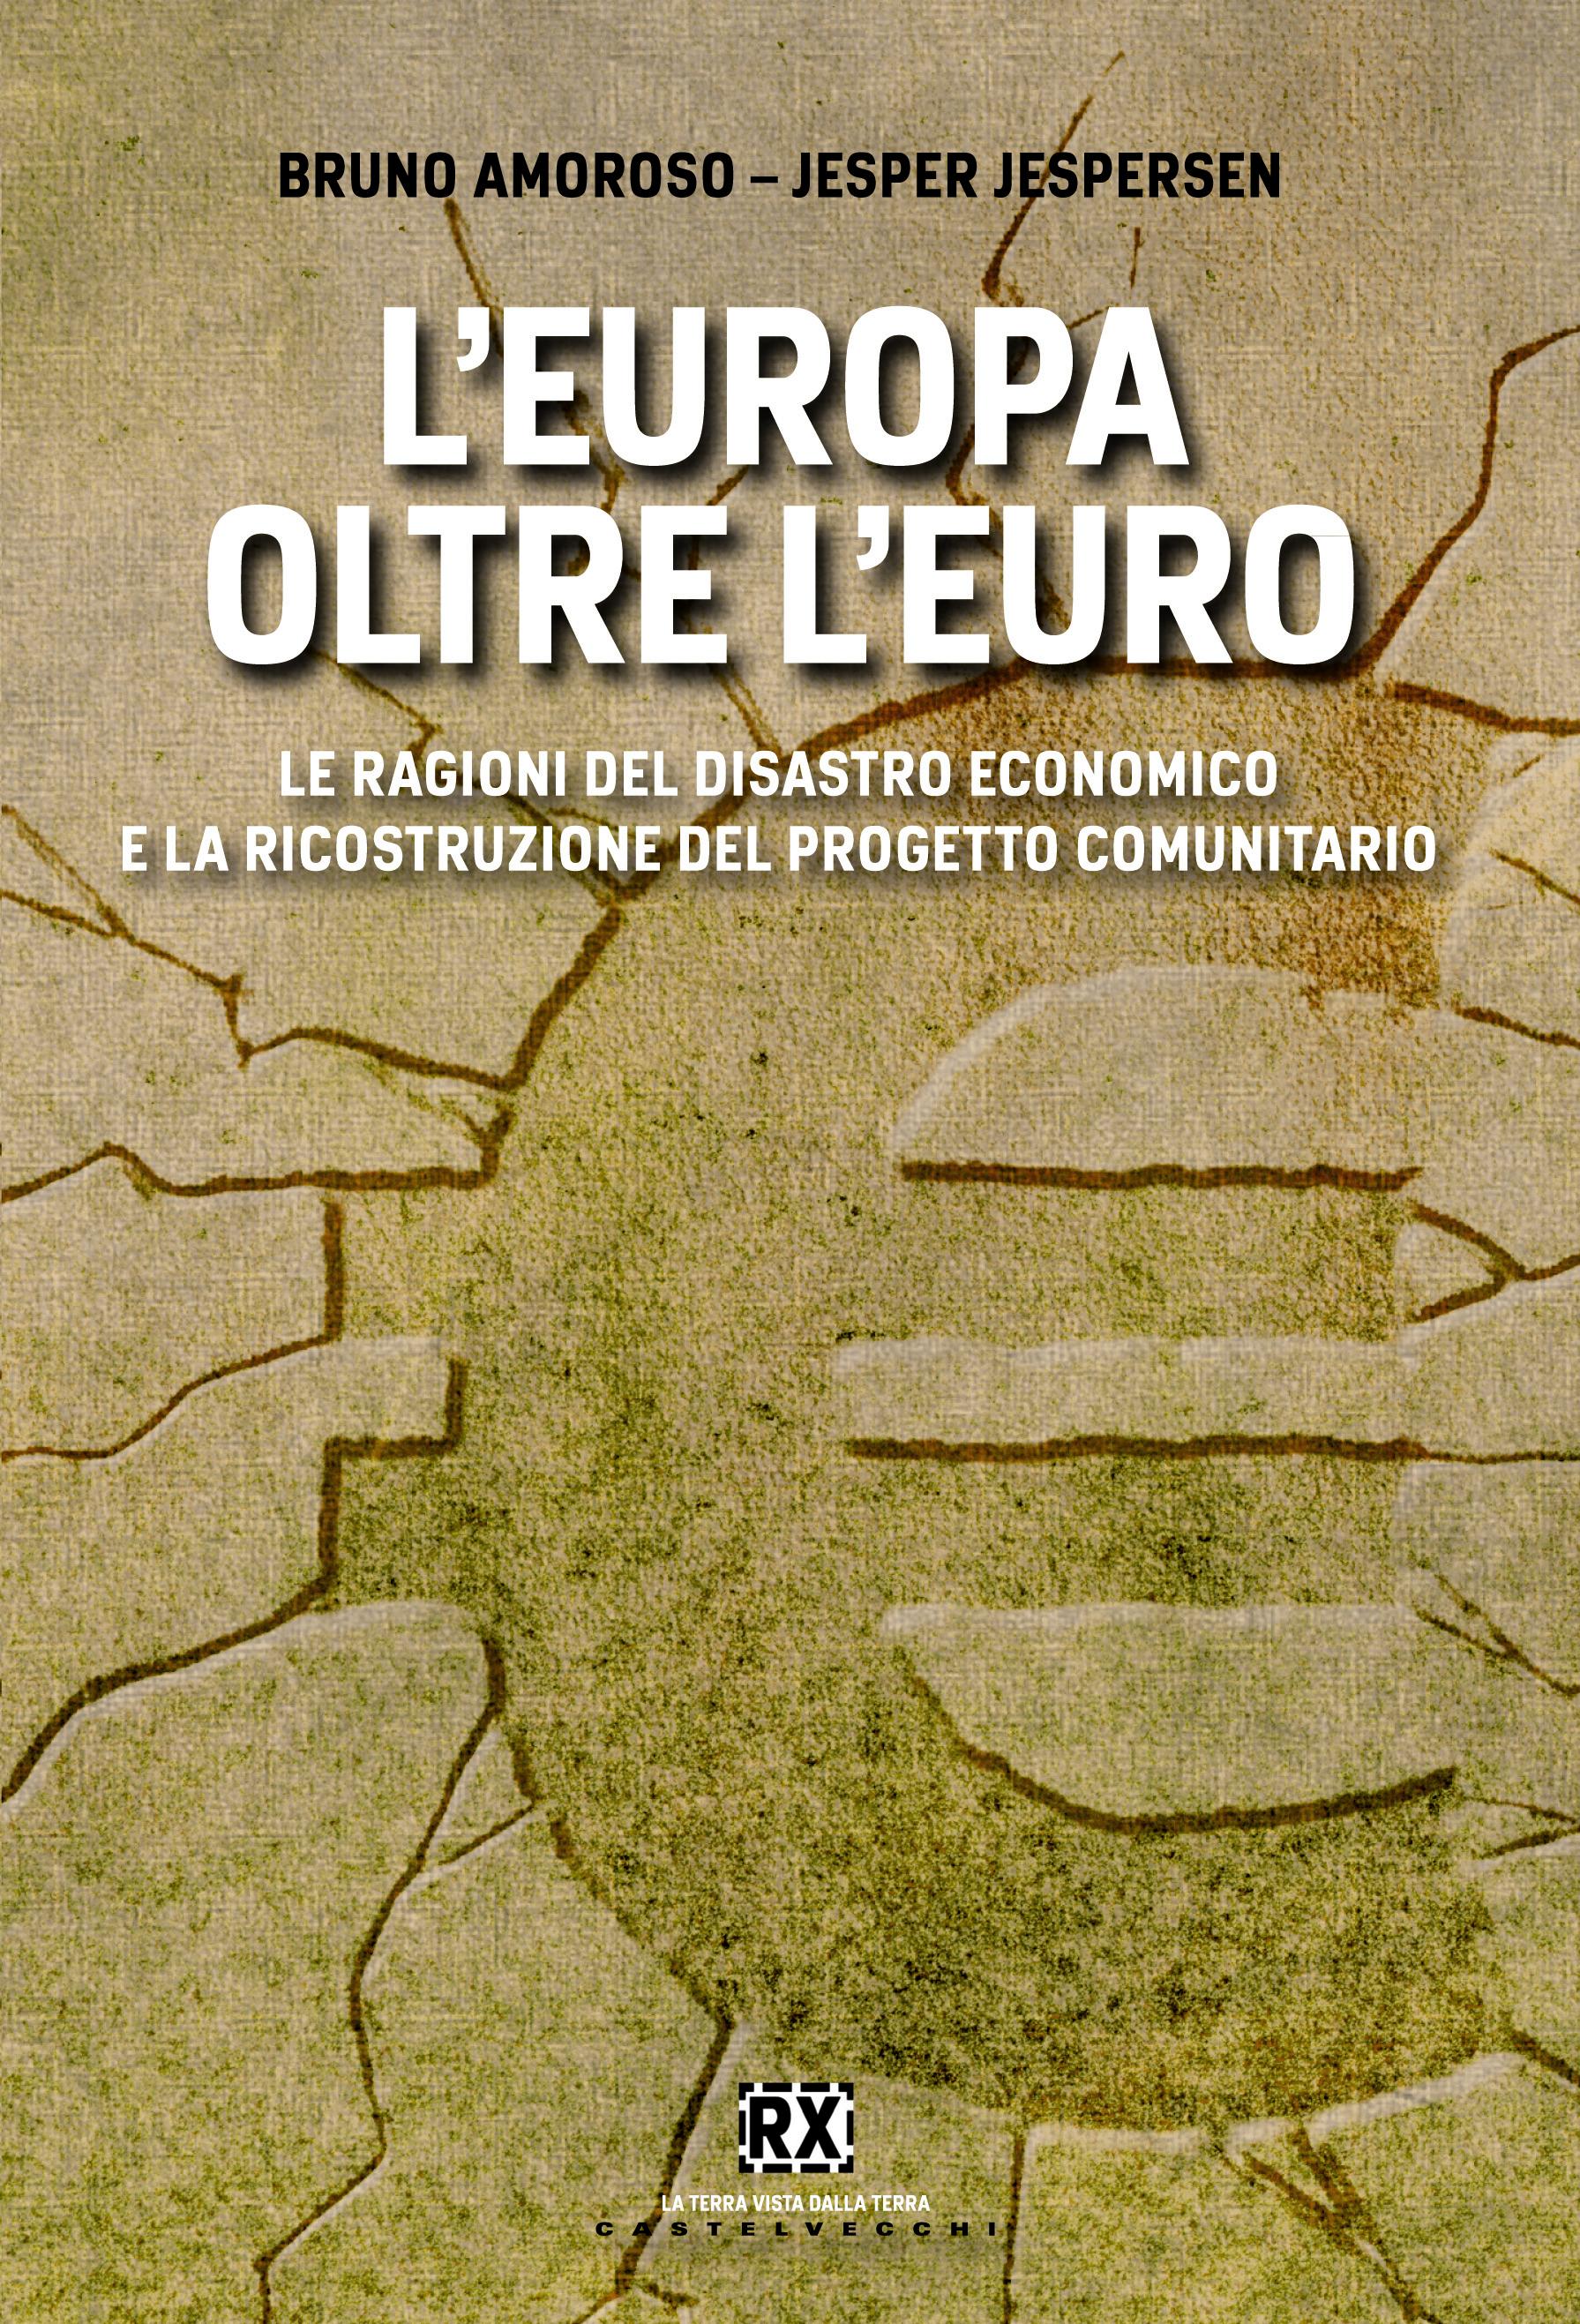 "L'Europa oltre l'Euro". Presentazione del libro del Prof. Bruno Amoroso